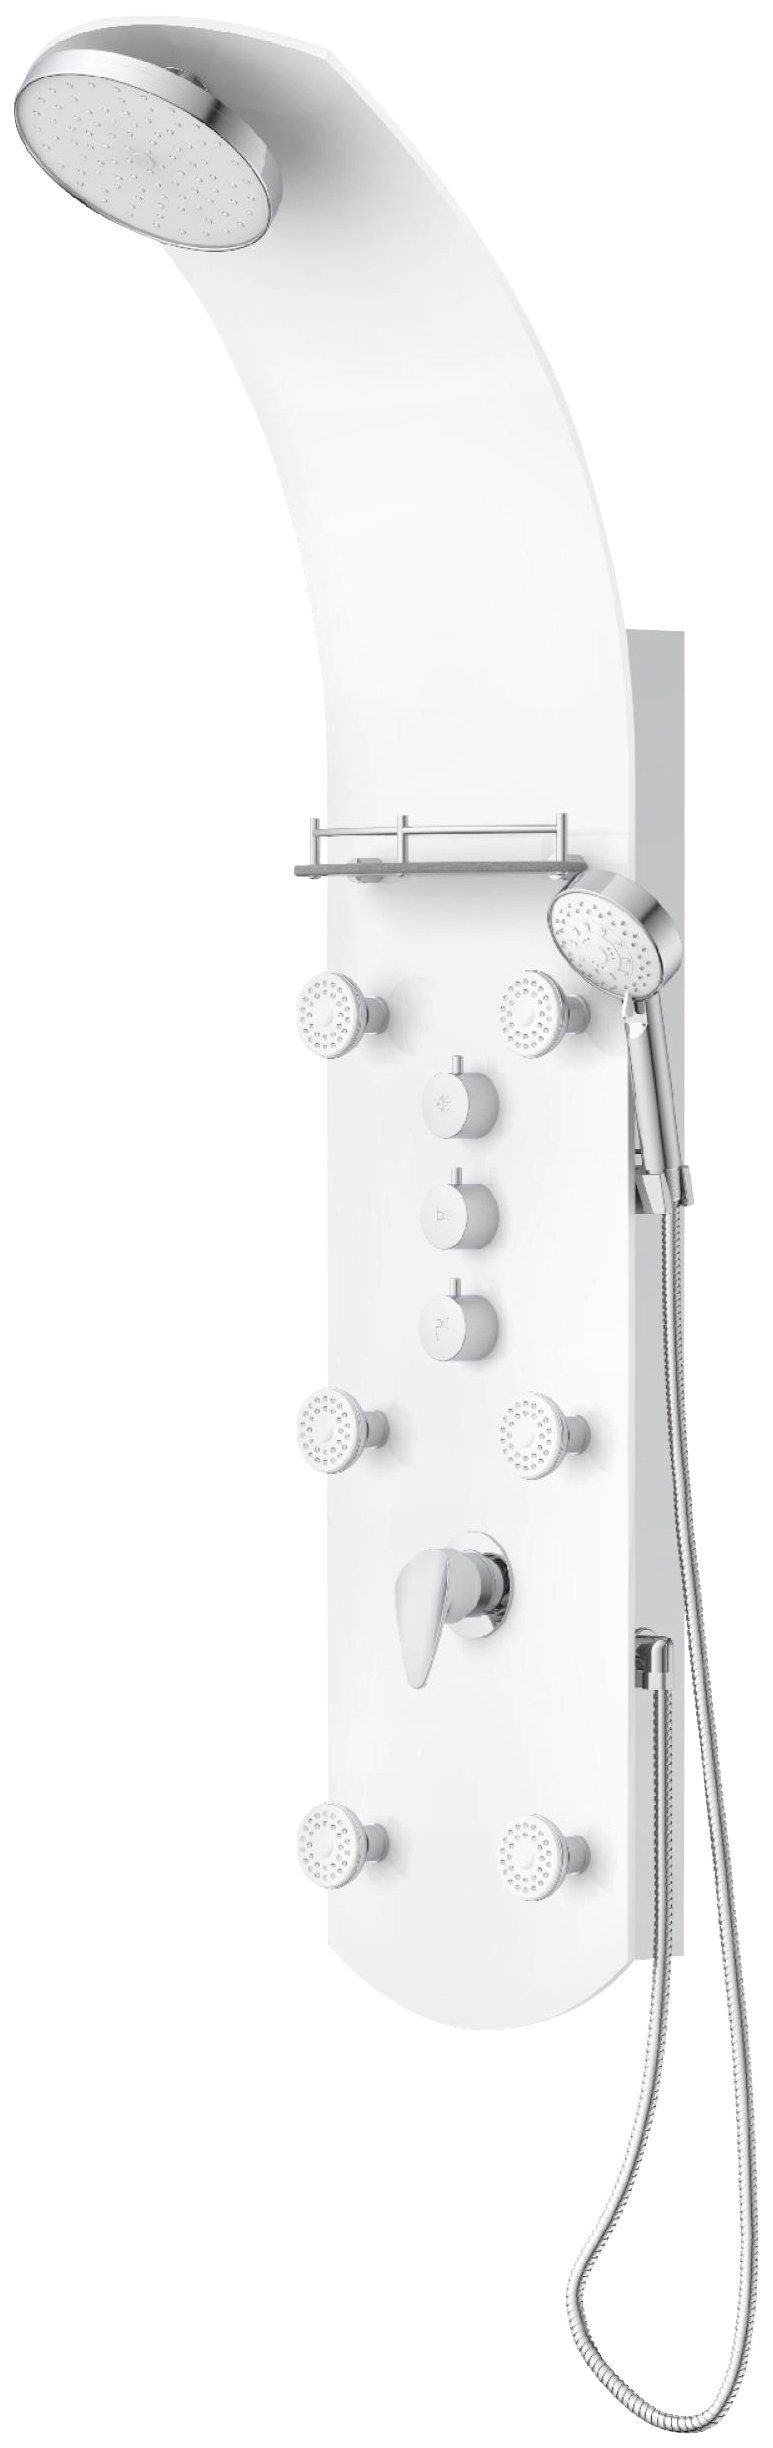 Eisl Duschsäule KARIBIK, Höhe 140 cm, 6 Massagedüsen, Wellness Duschsystem mit Armatur und Regendusche Weiß